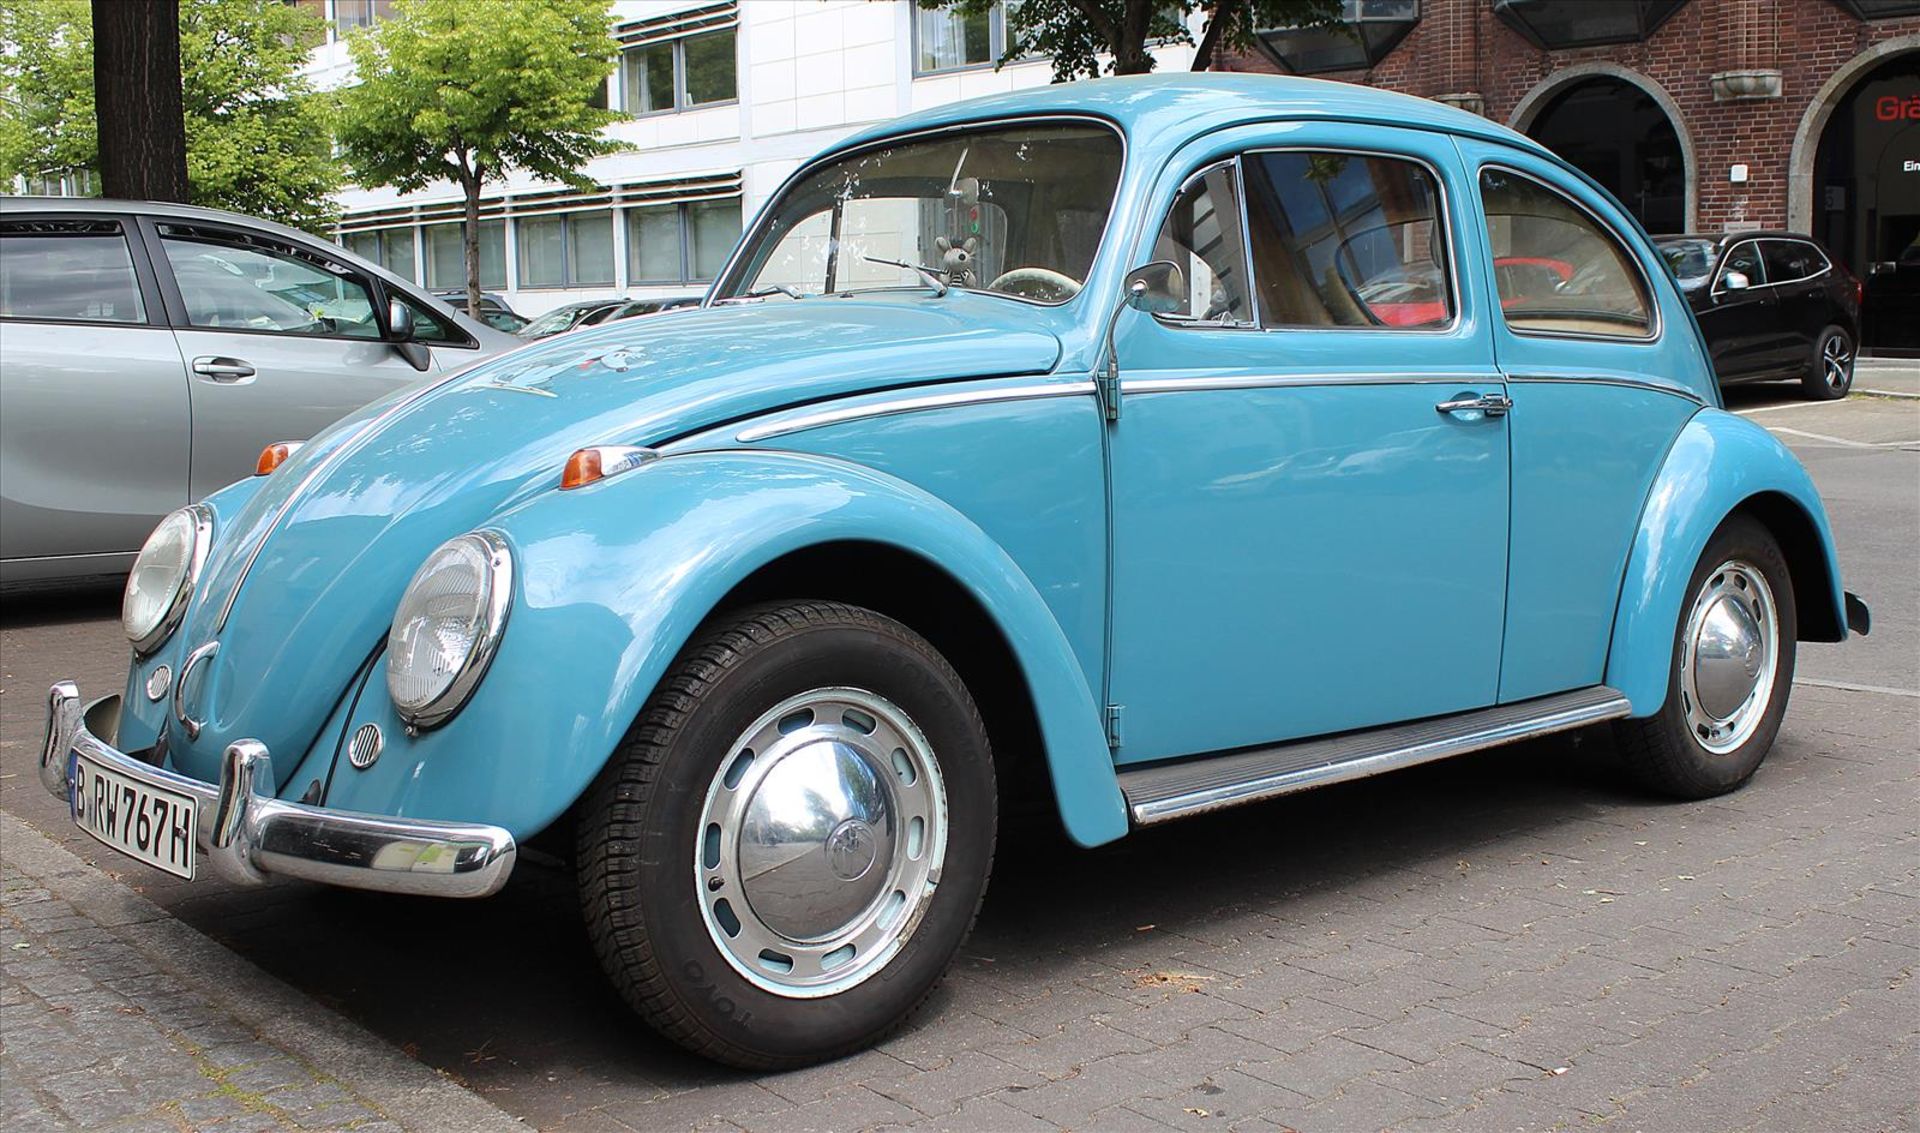 Originaler Käfer-Oldtimer, Volkswagen.